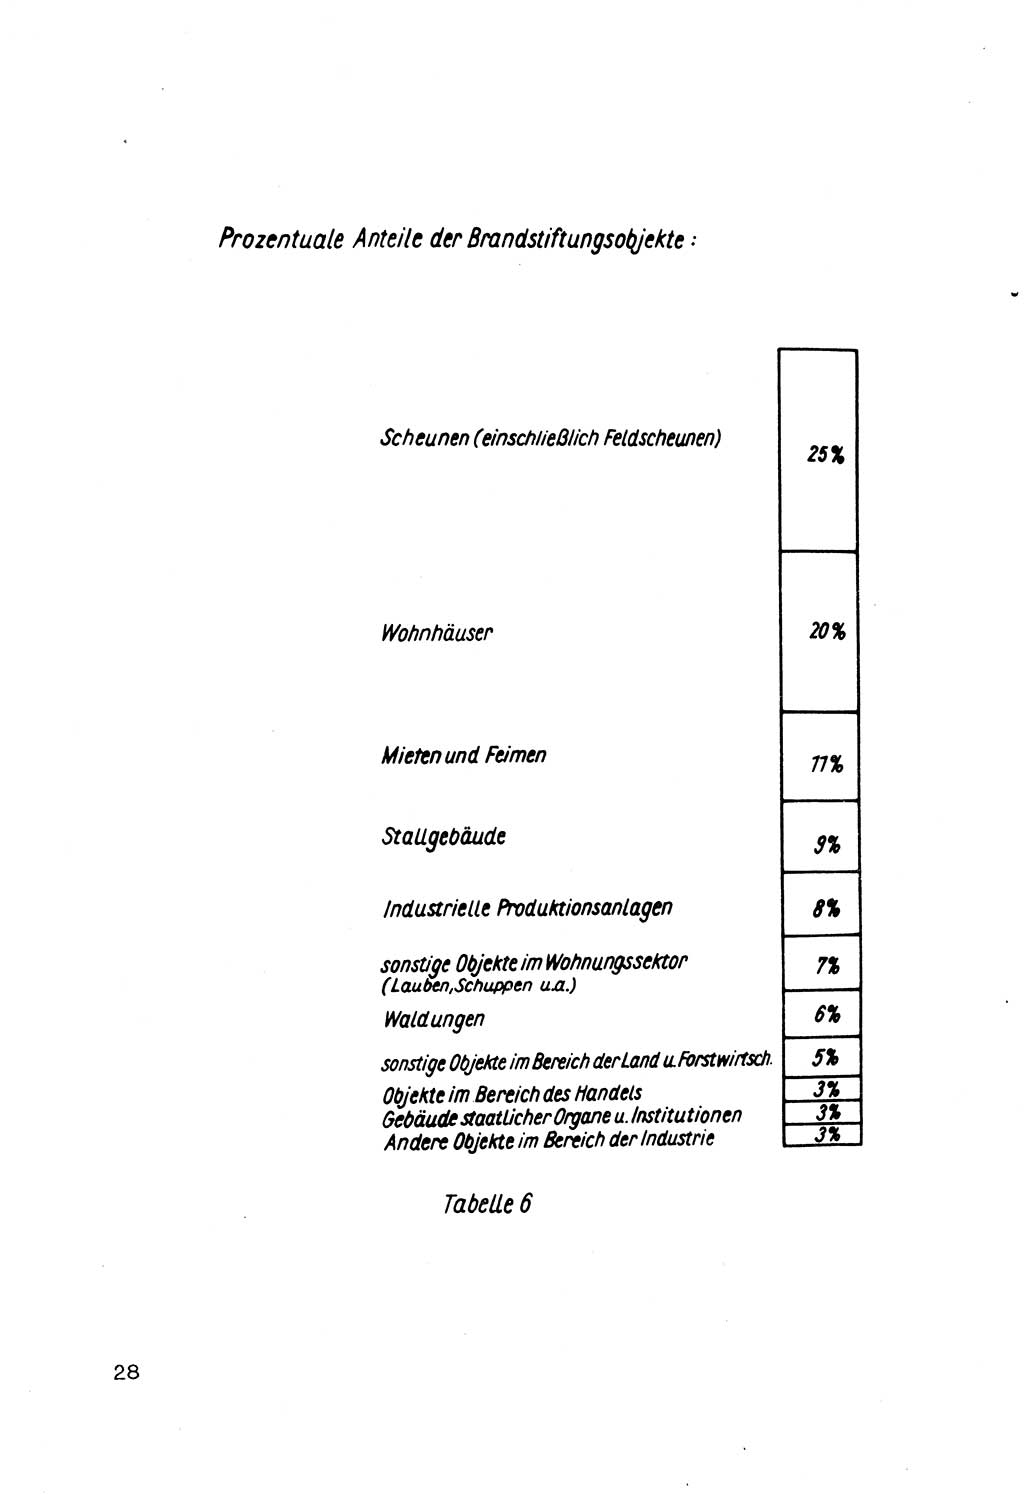 Strafrecht der DDR (Deutsche Demokratische Republik), Besonderer Teil, Lehrmaterial, Heft 7 1970, Seite 28 (Strafr. DDR BT Lehrmat. H. 7 1970, S. 28)